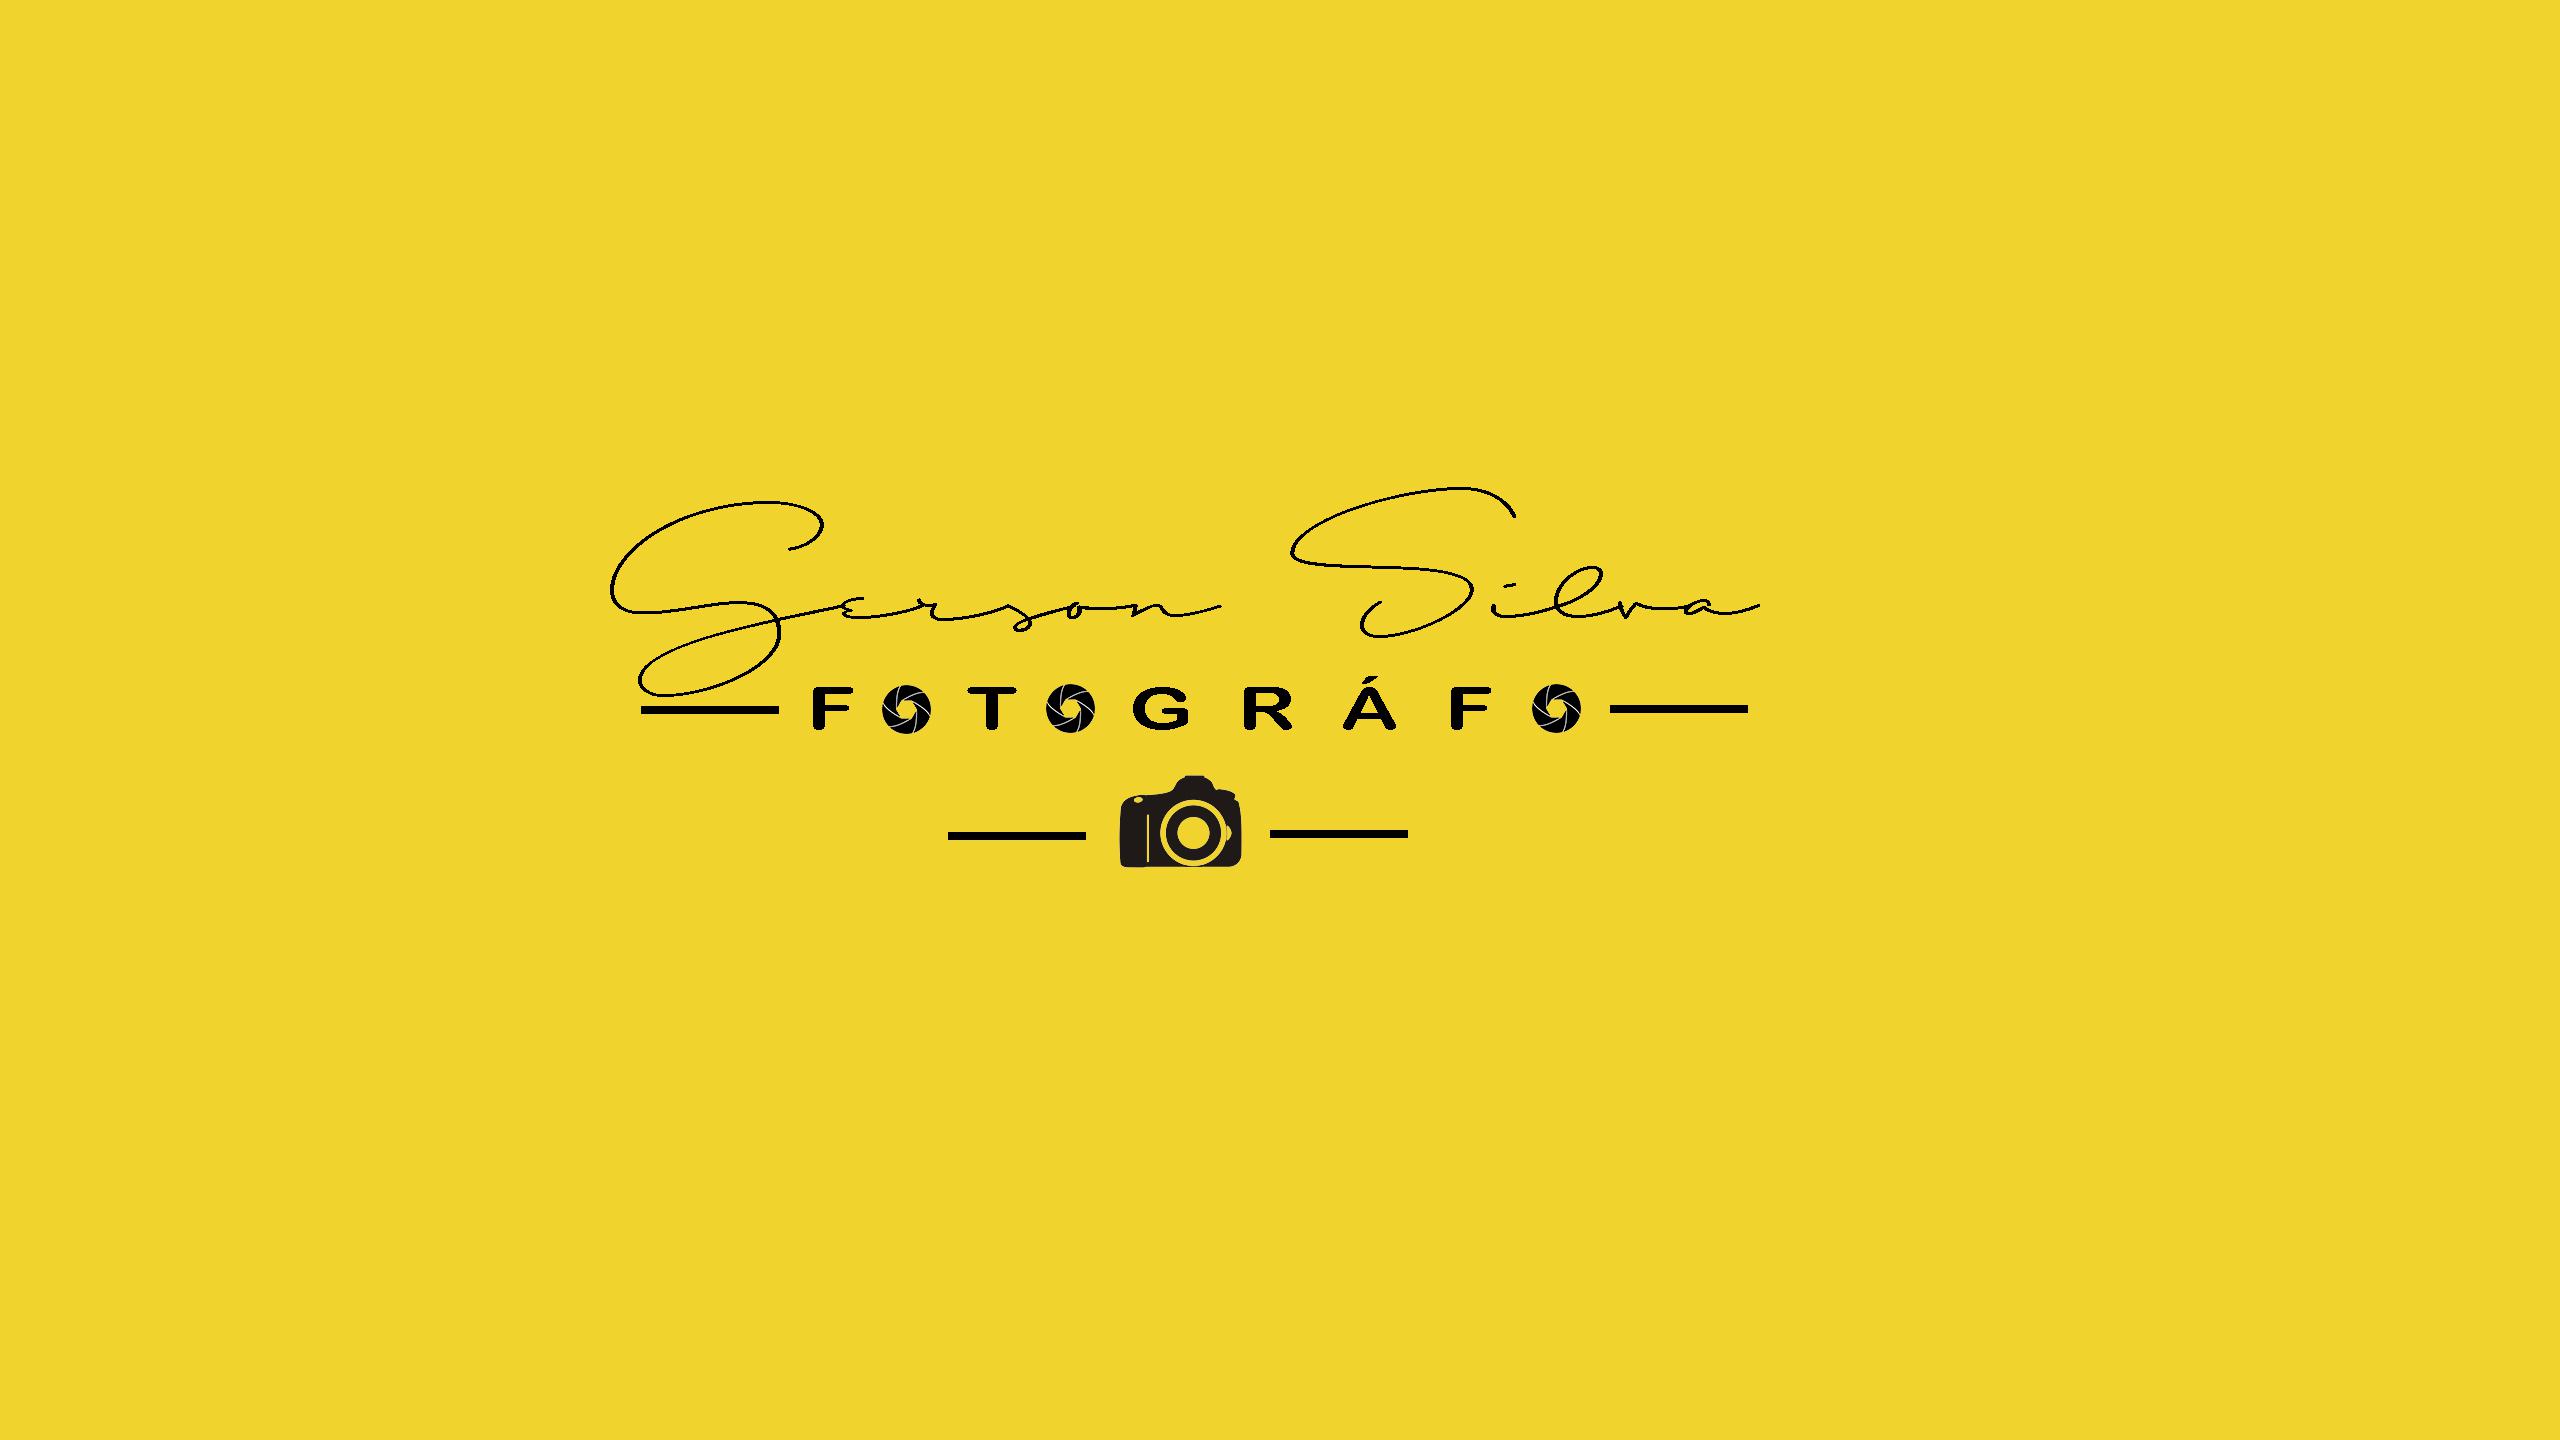 Gerson Silva Fotografo Logo